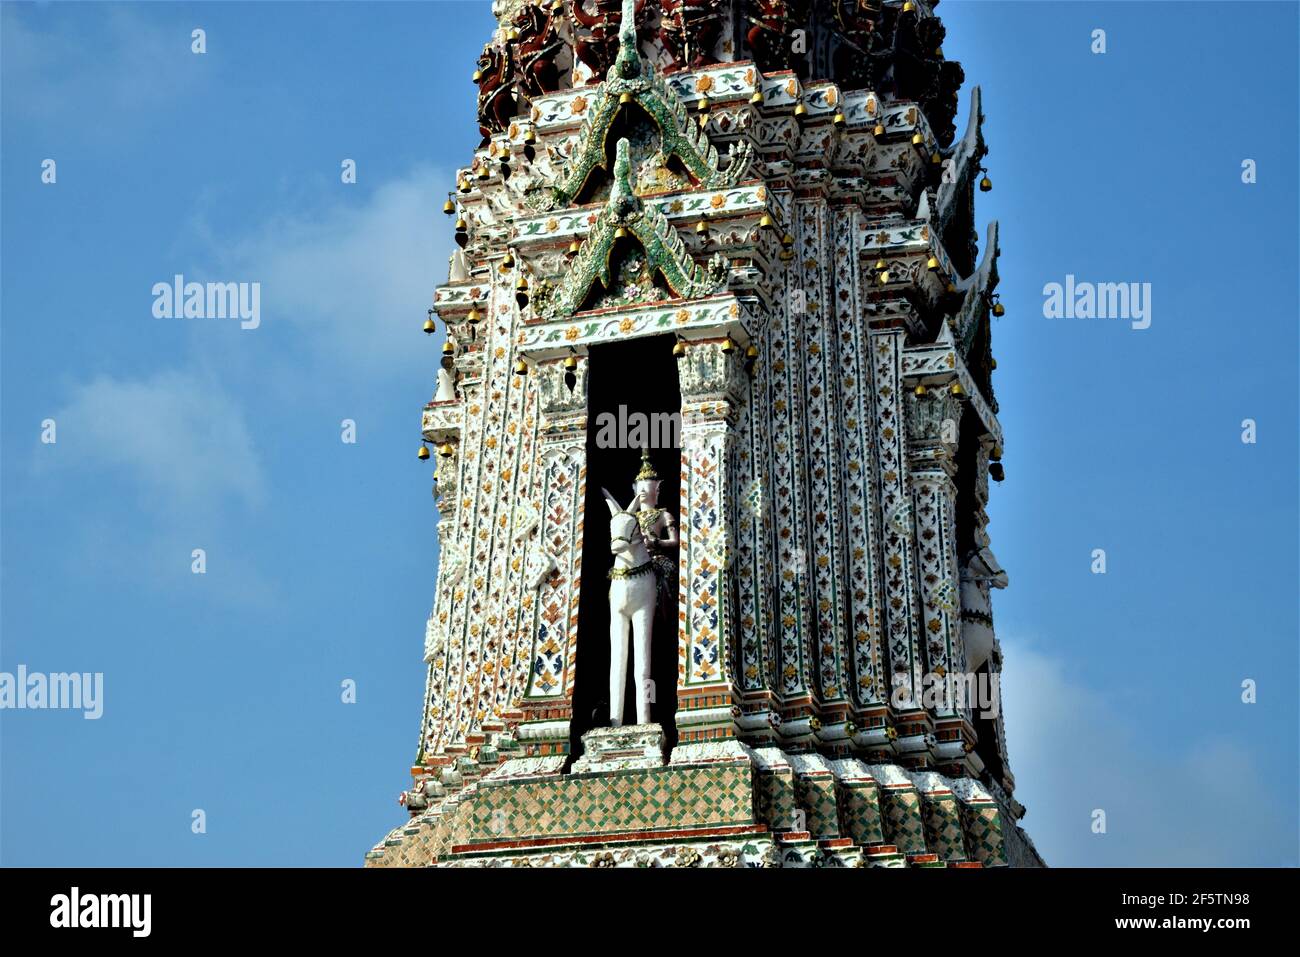 Wat Arun est un complexe de temples bouddhistes à Bangkok, dans le quartier très peuplé de Thonburi, sur la rive droite de la rivière Chao Phraya Banque D'Images